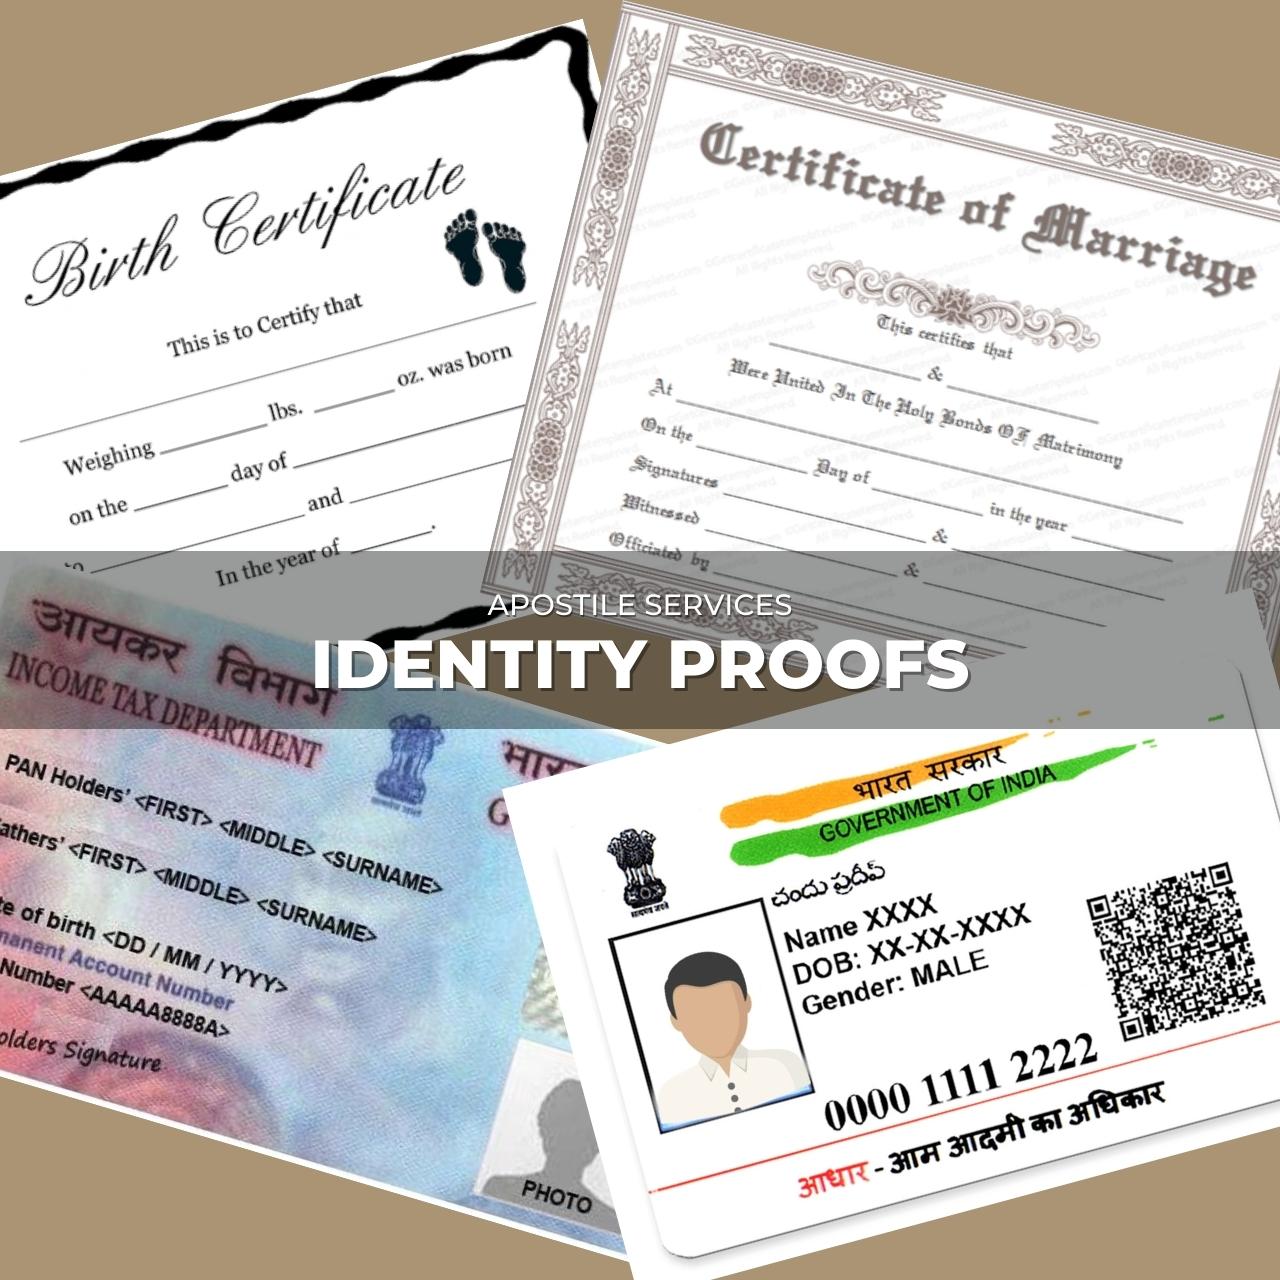 PAN, Aadhar, Marriage Certificate, Birth Certificate etc